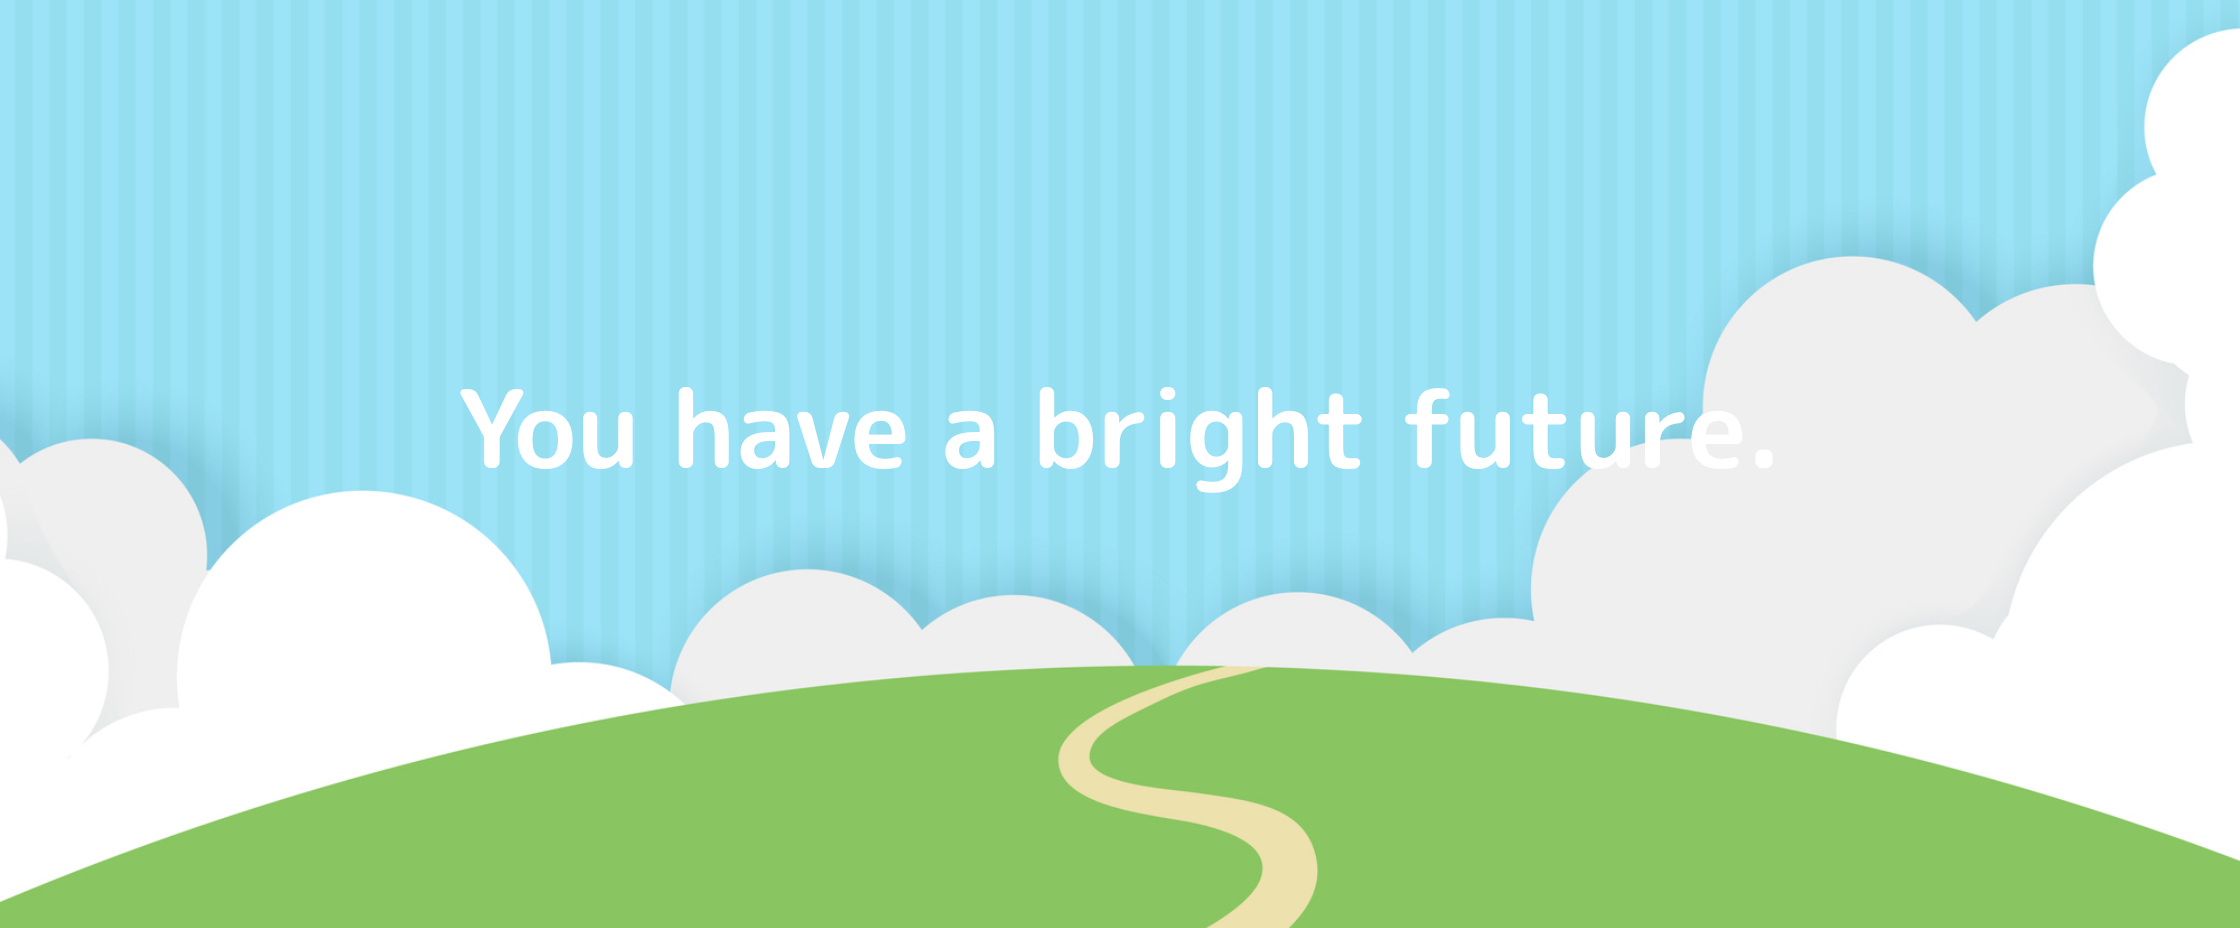 You have a bright future.